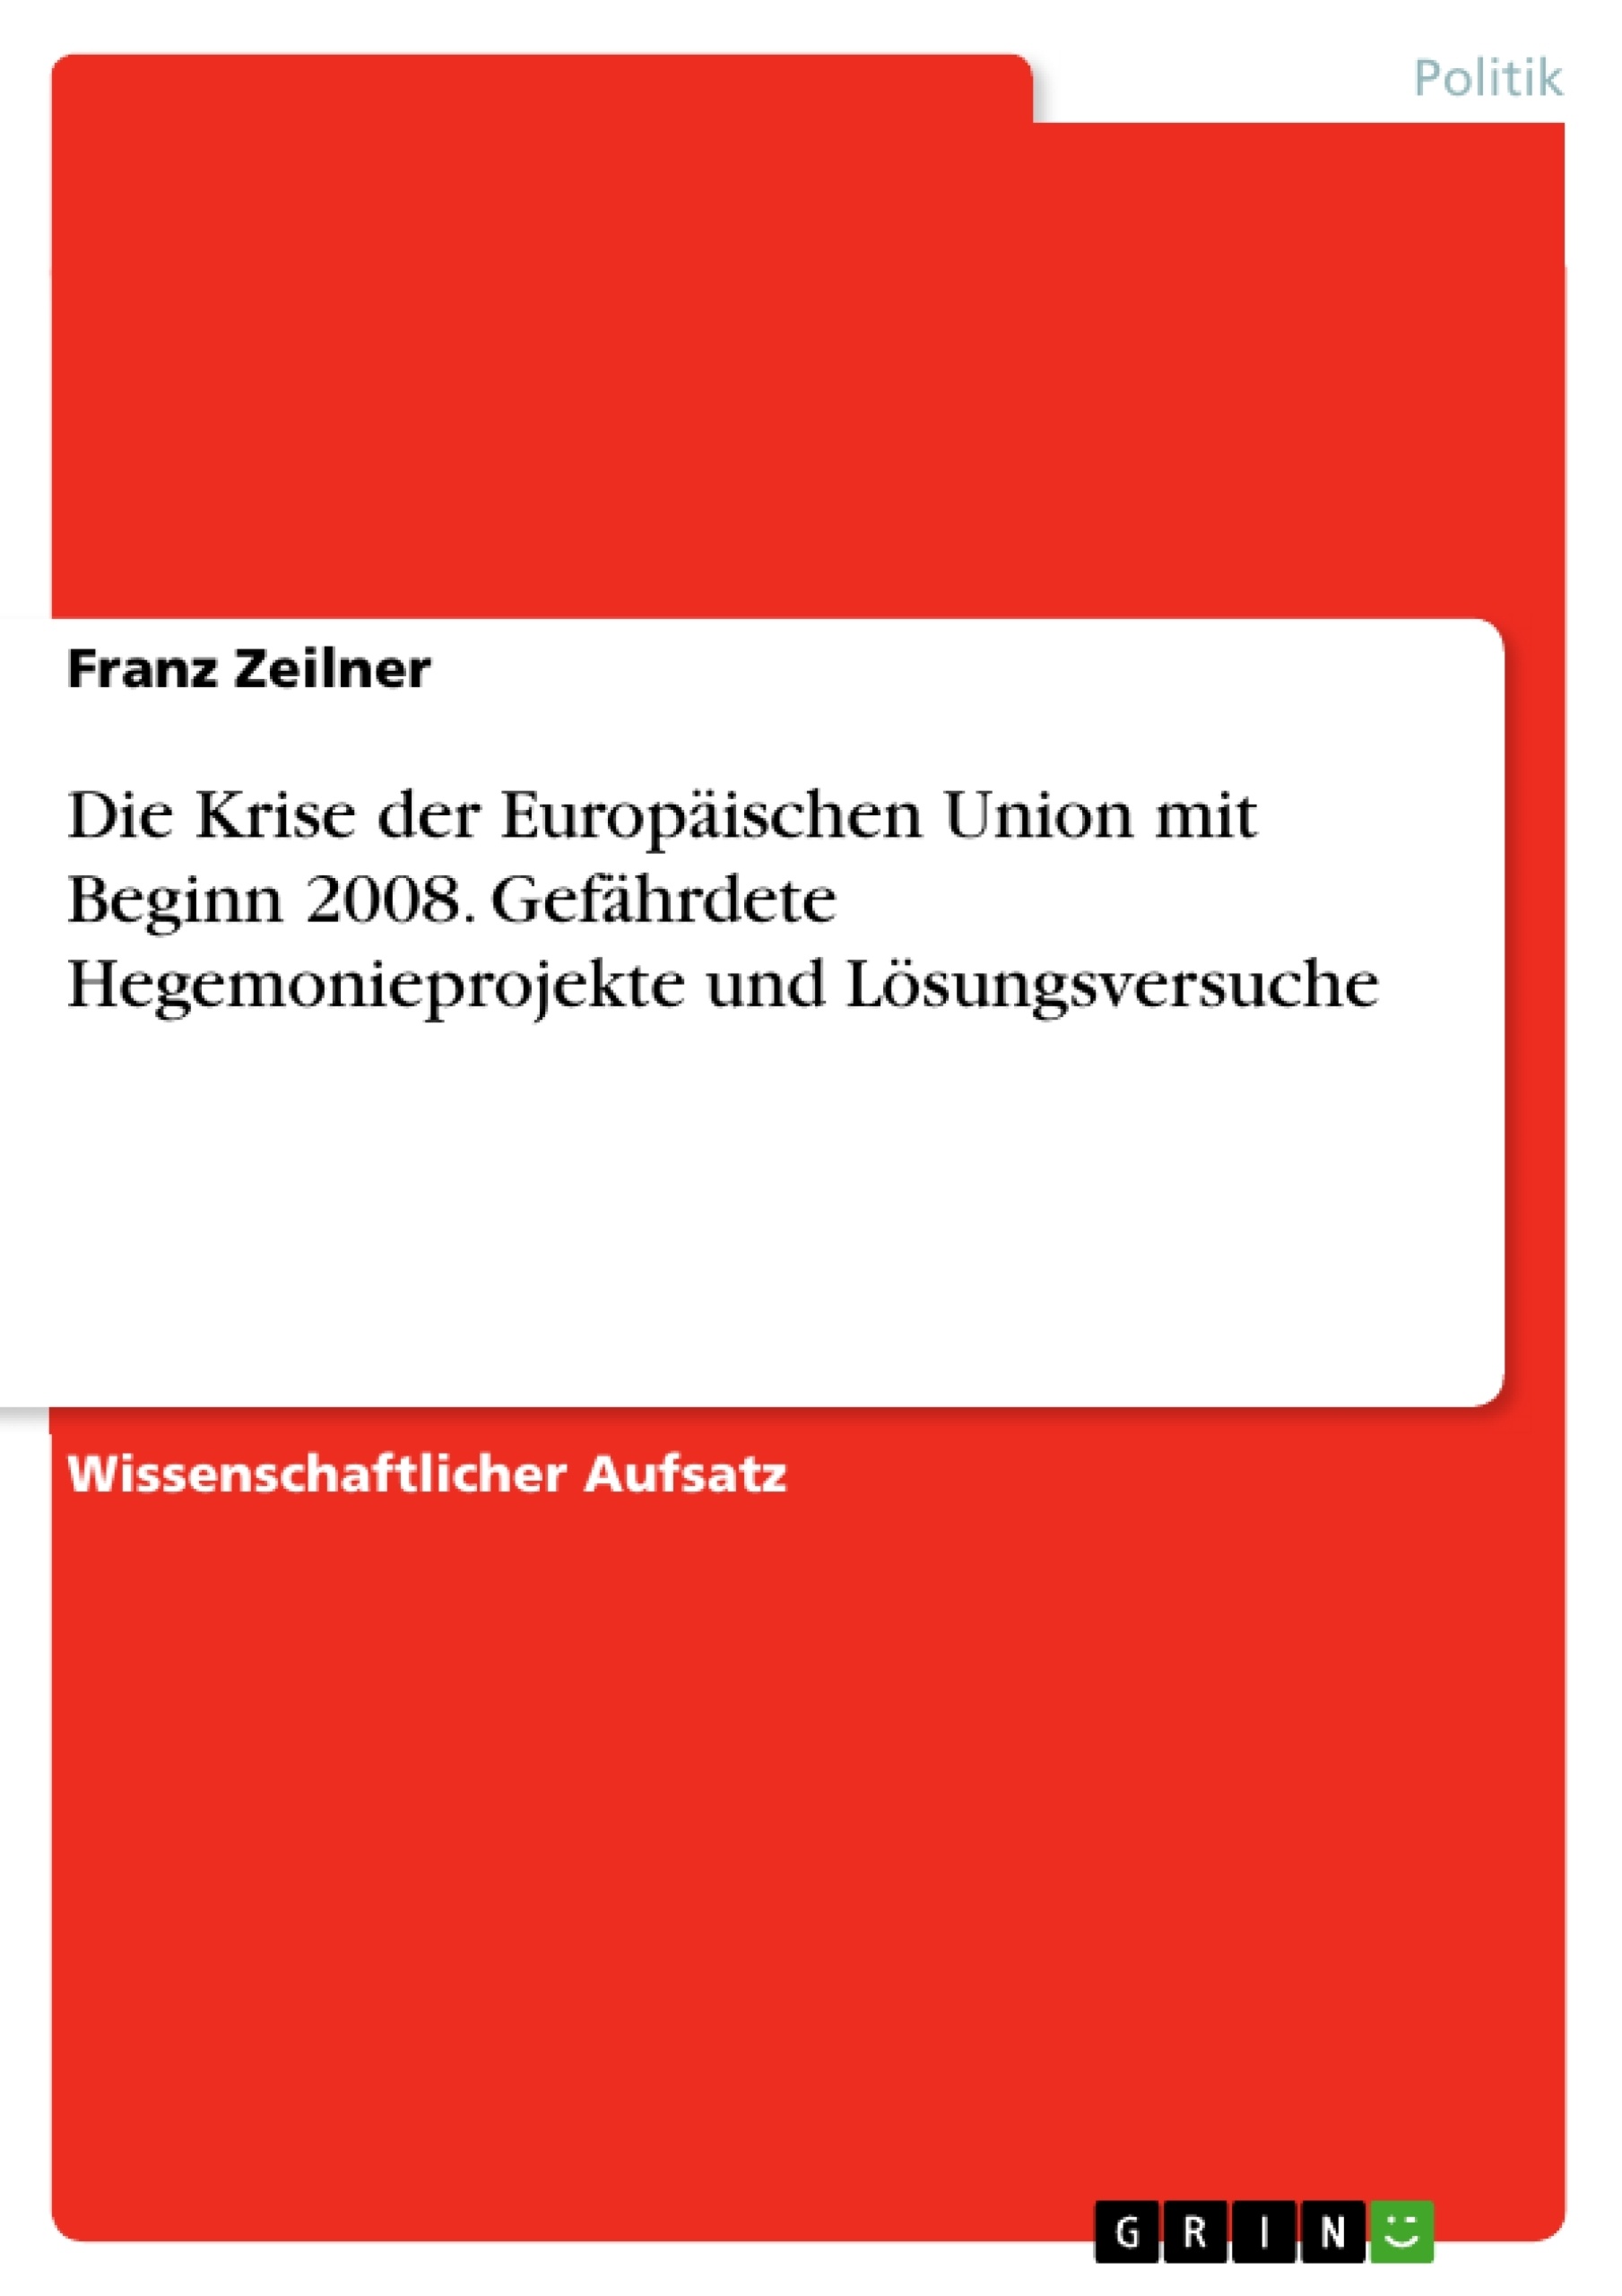 Titel: Die Krise der Europäischen Union mit Beginn 2008. Gefährdete Hegemonieprojekte und Lösungsversuche